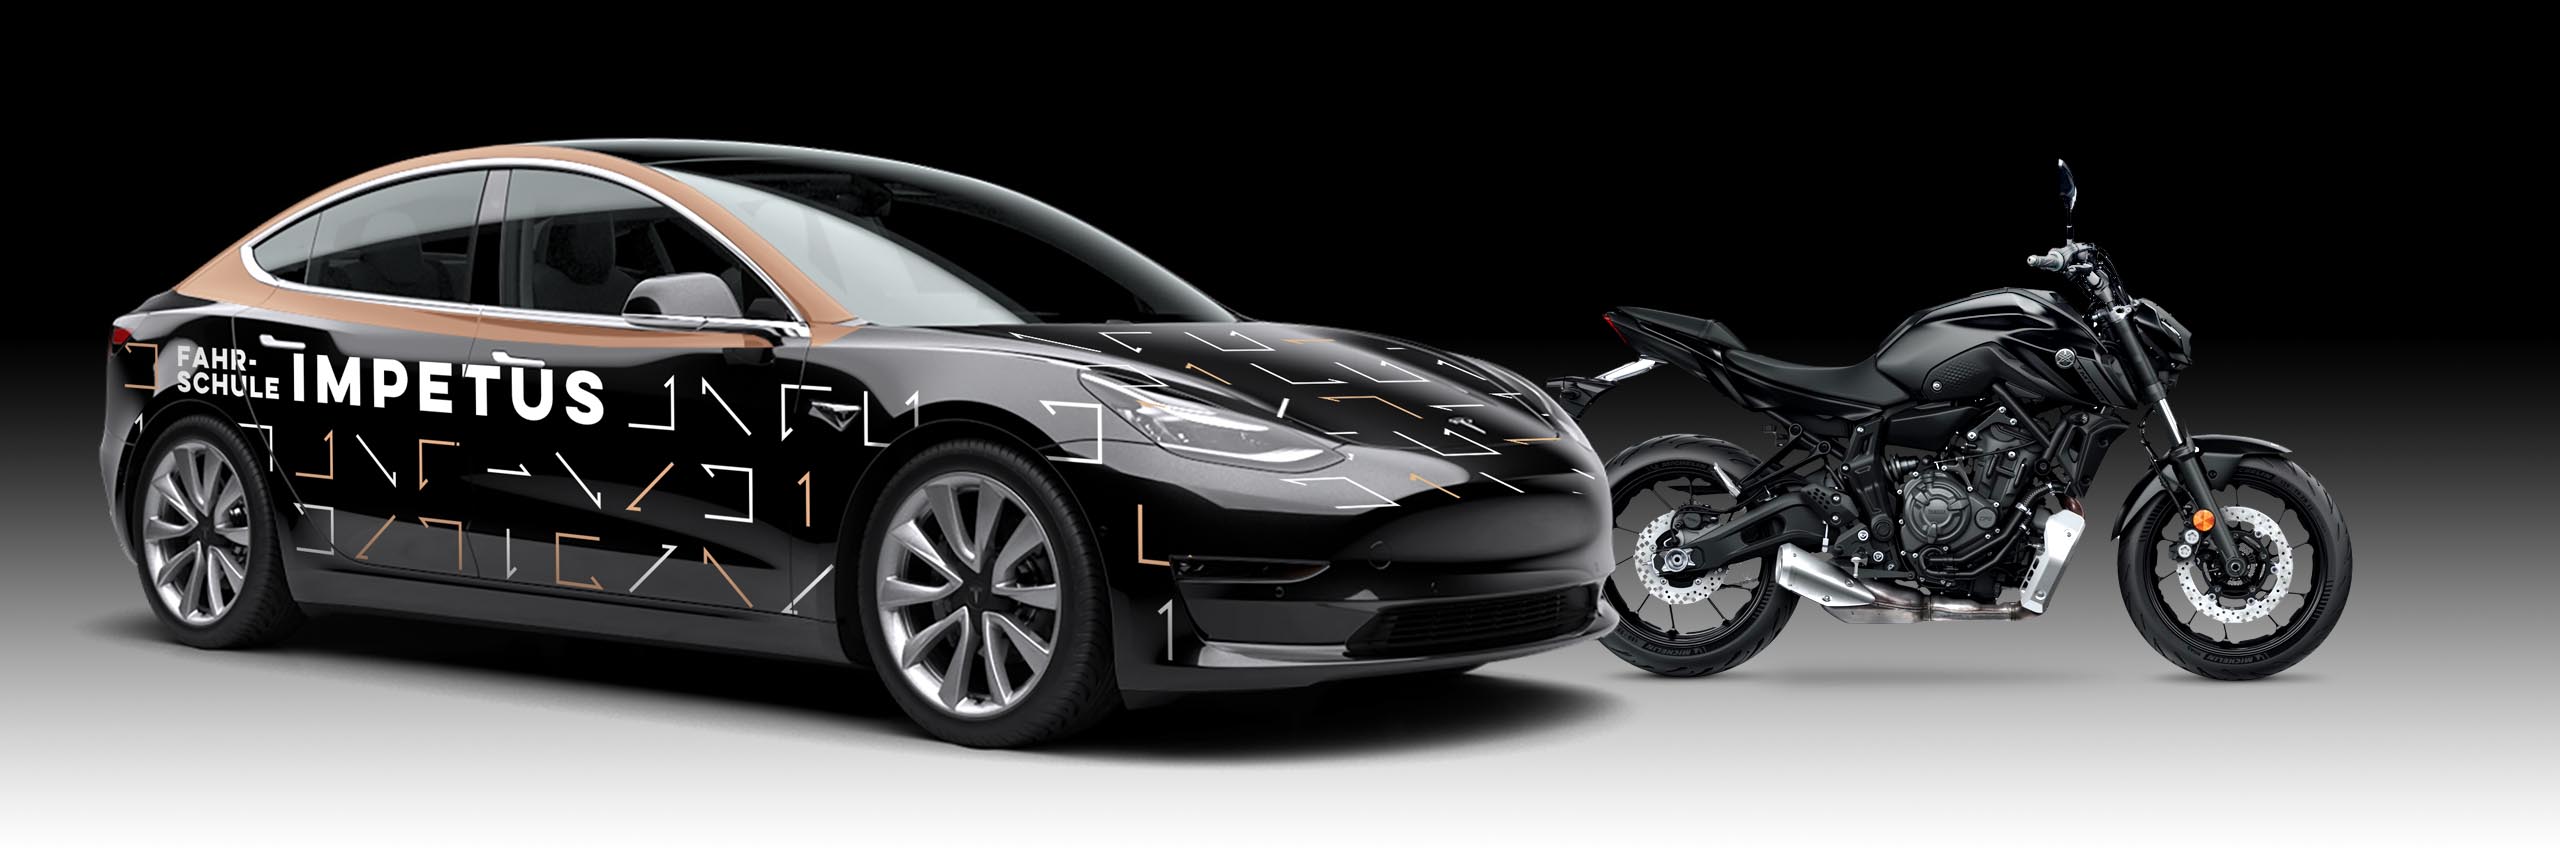 Abbildung eines Tesla-Fahrzeuges und Motorrades